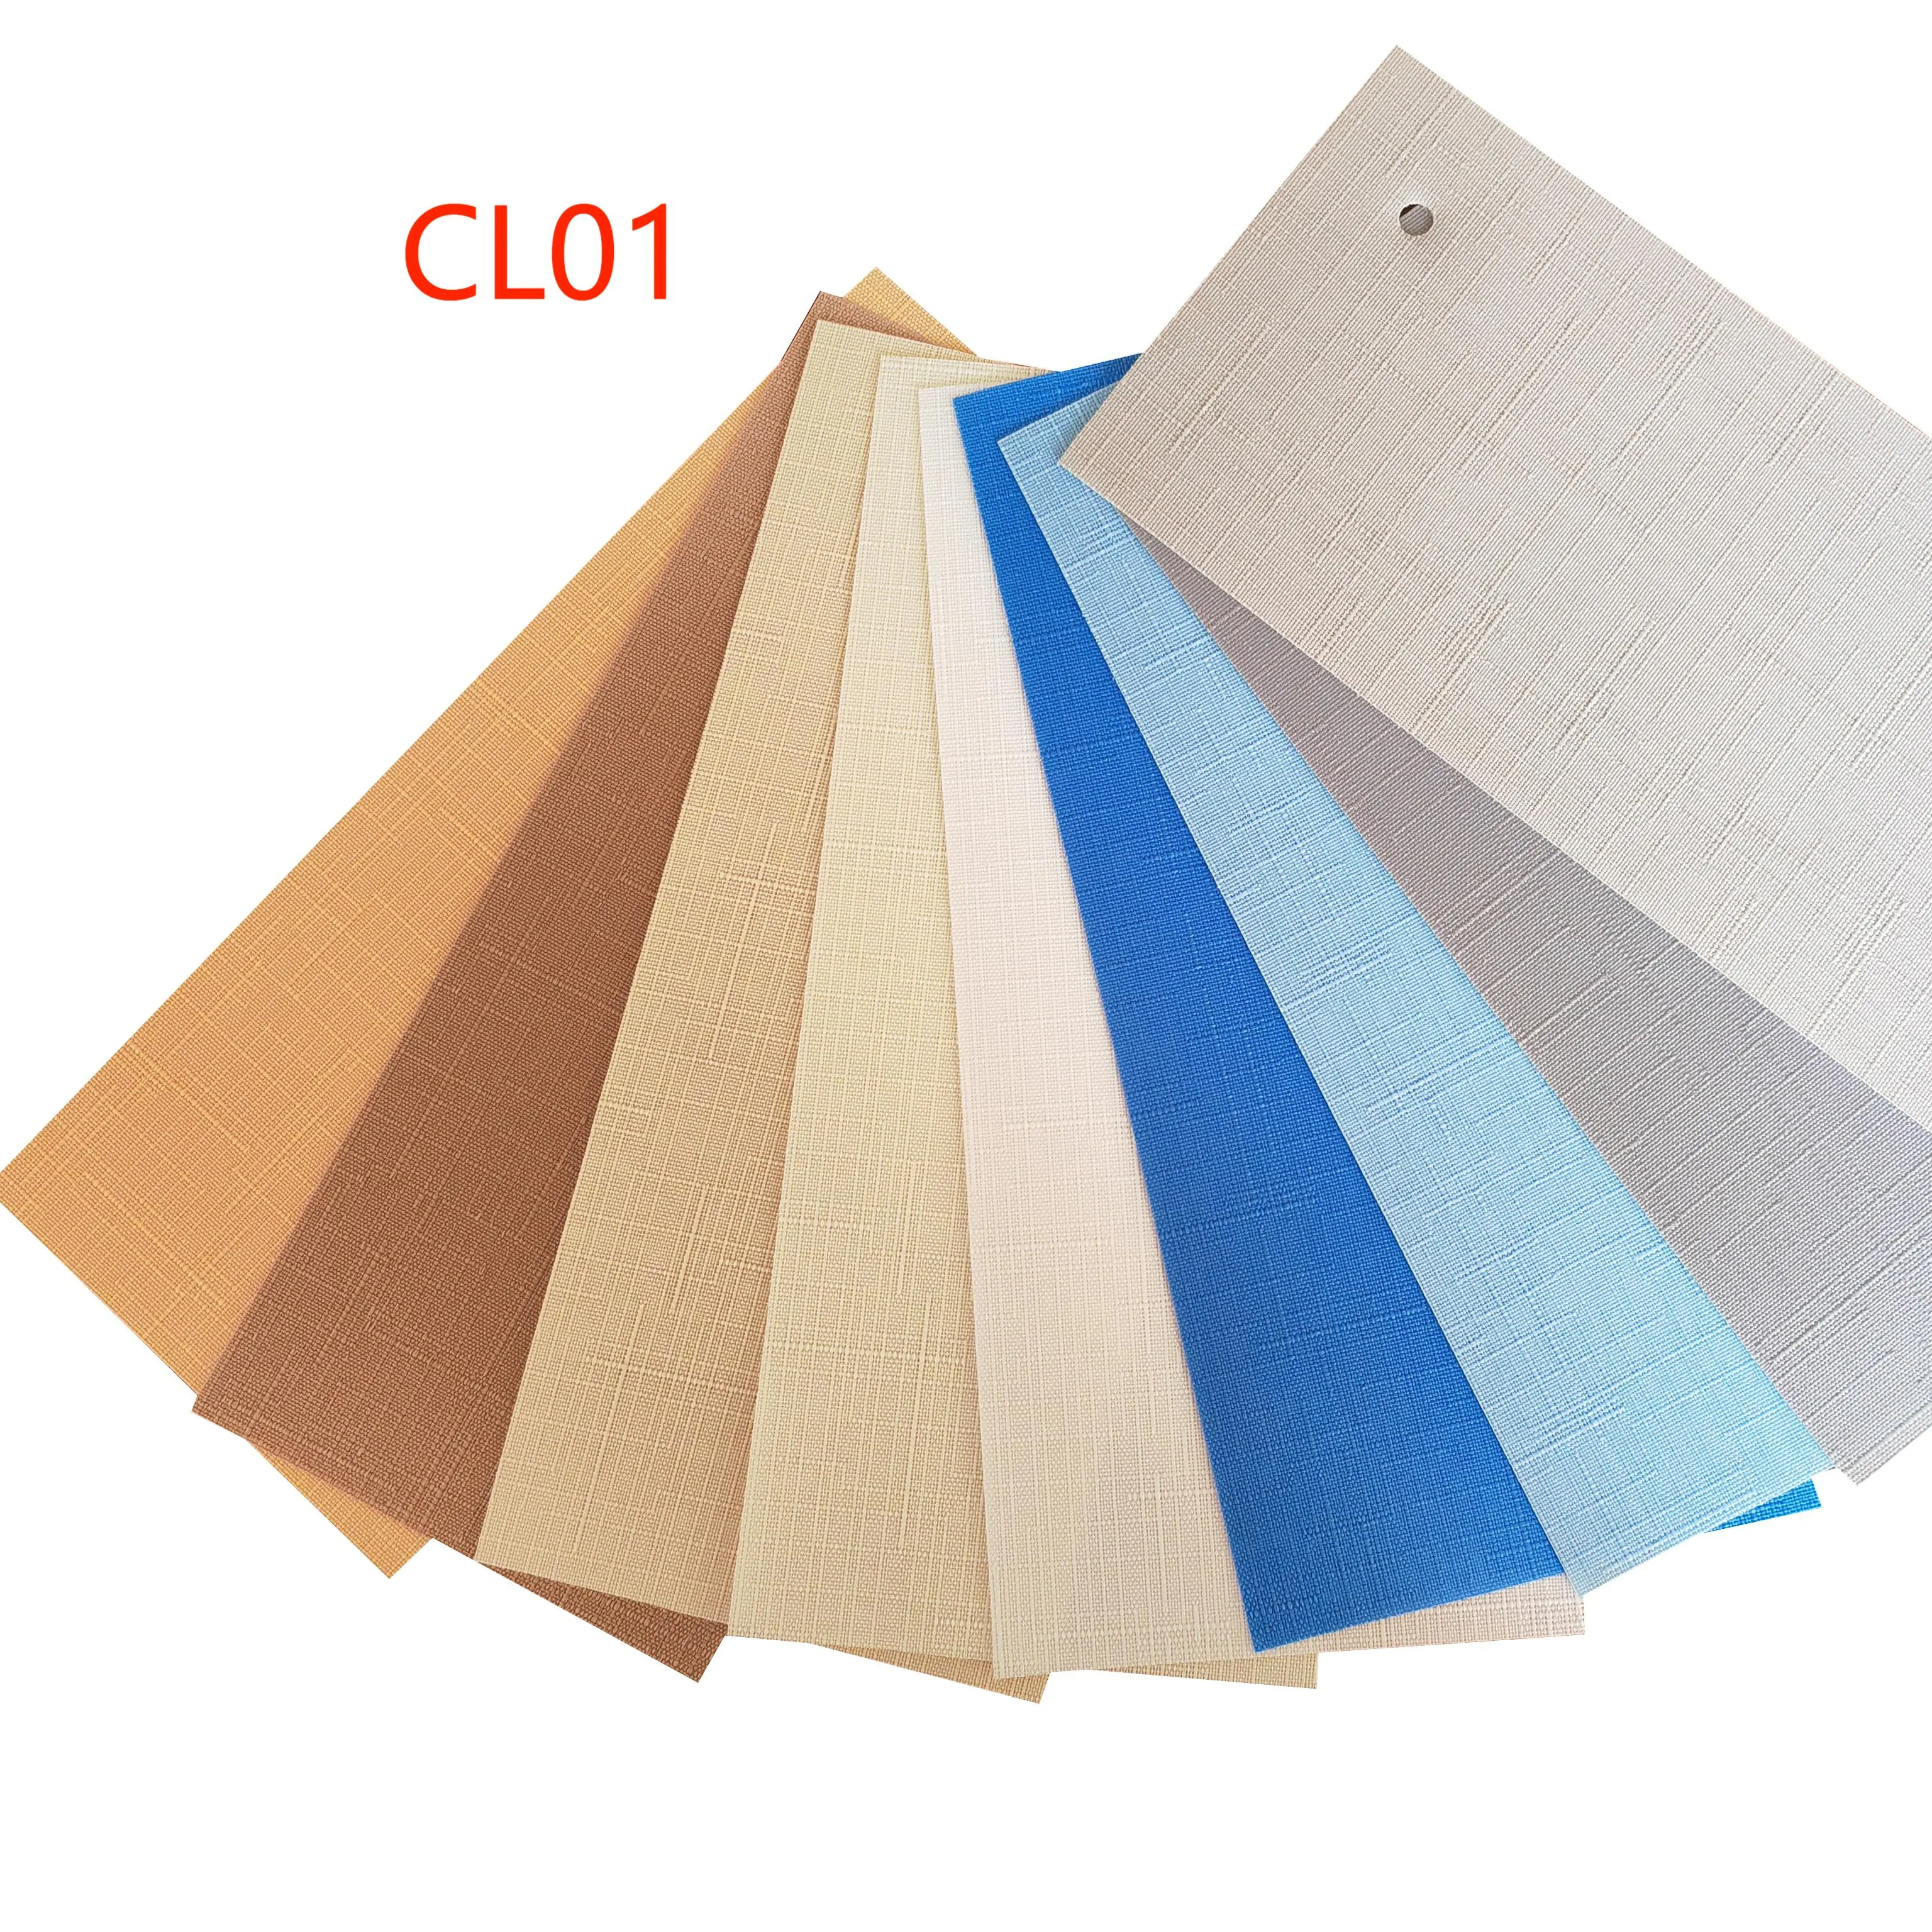 CL01 серии 89 мм Тканевые вертикальные жалюзи с большим количеством цветов полупрозрачные тканевые затемняющие роликовые вертикальные жалюзи для окон